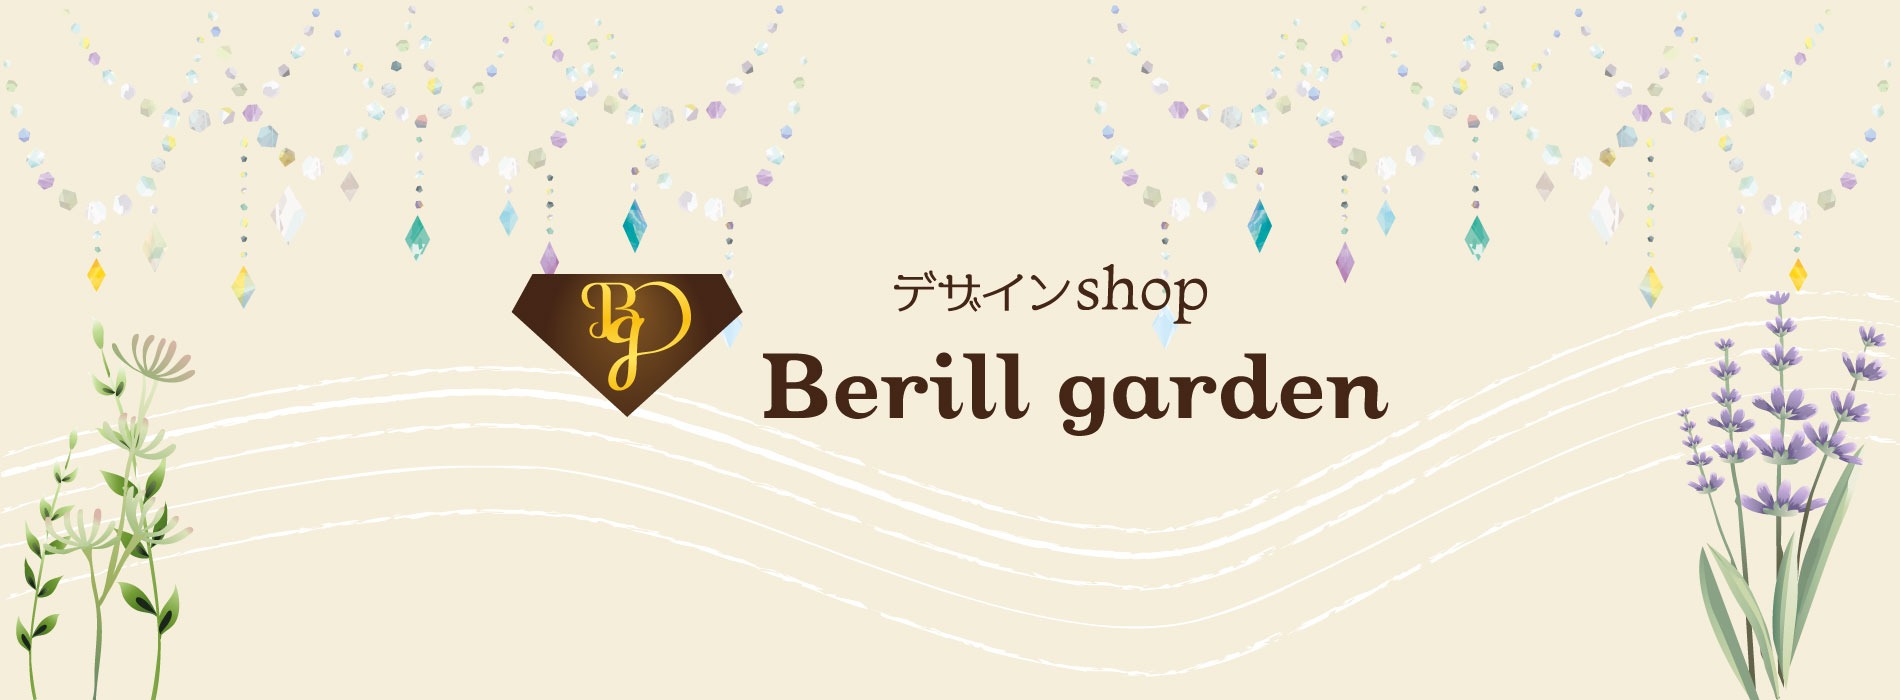 Berill garden